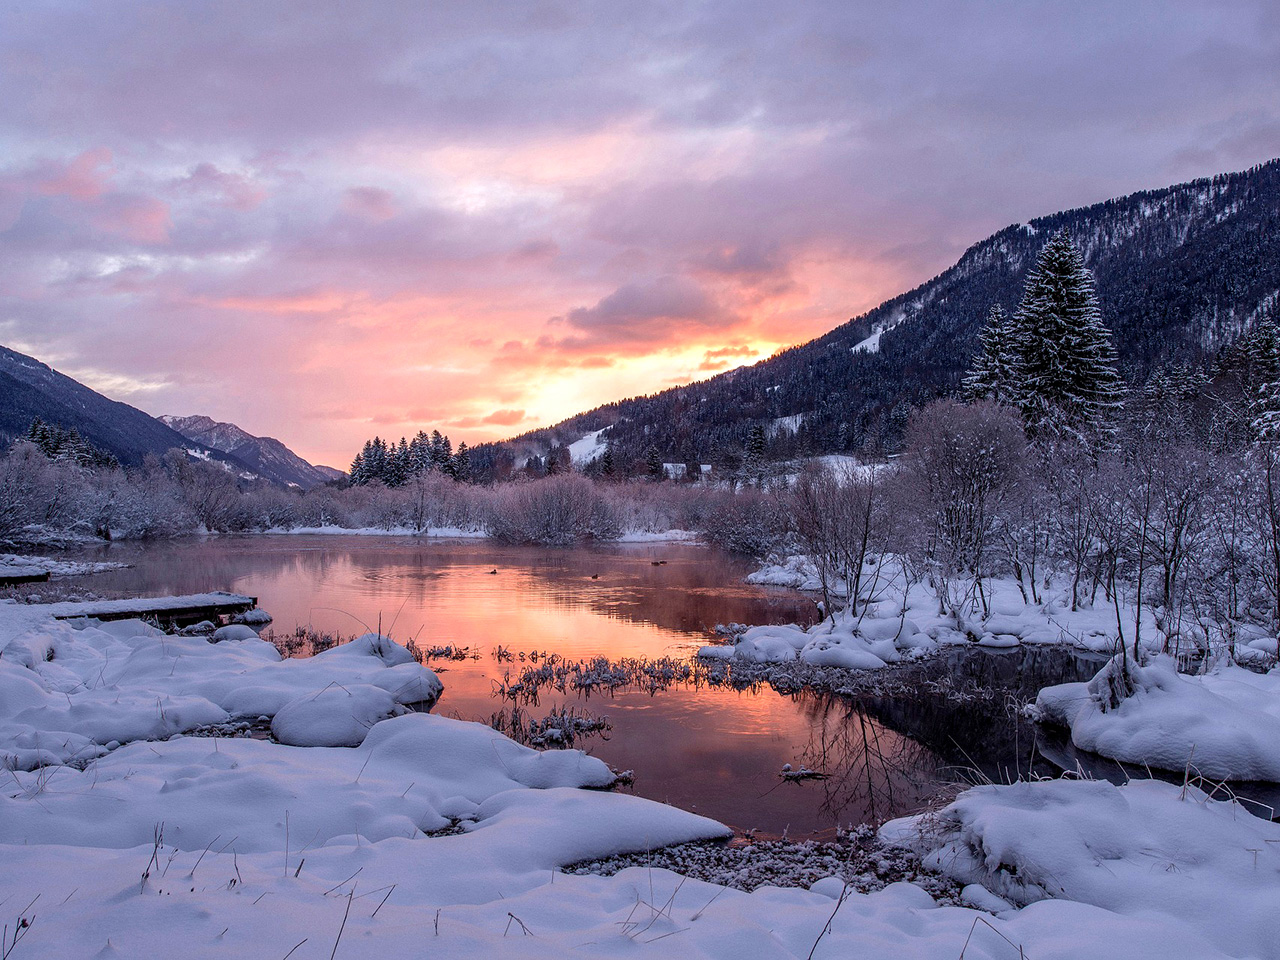 Zalazak sunca nad jezerom okruženom planinama i bogatom vegetacijom prekrivenom snijegom. 